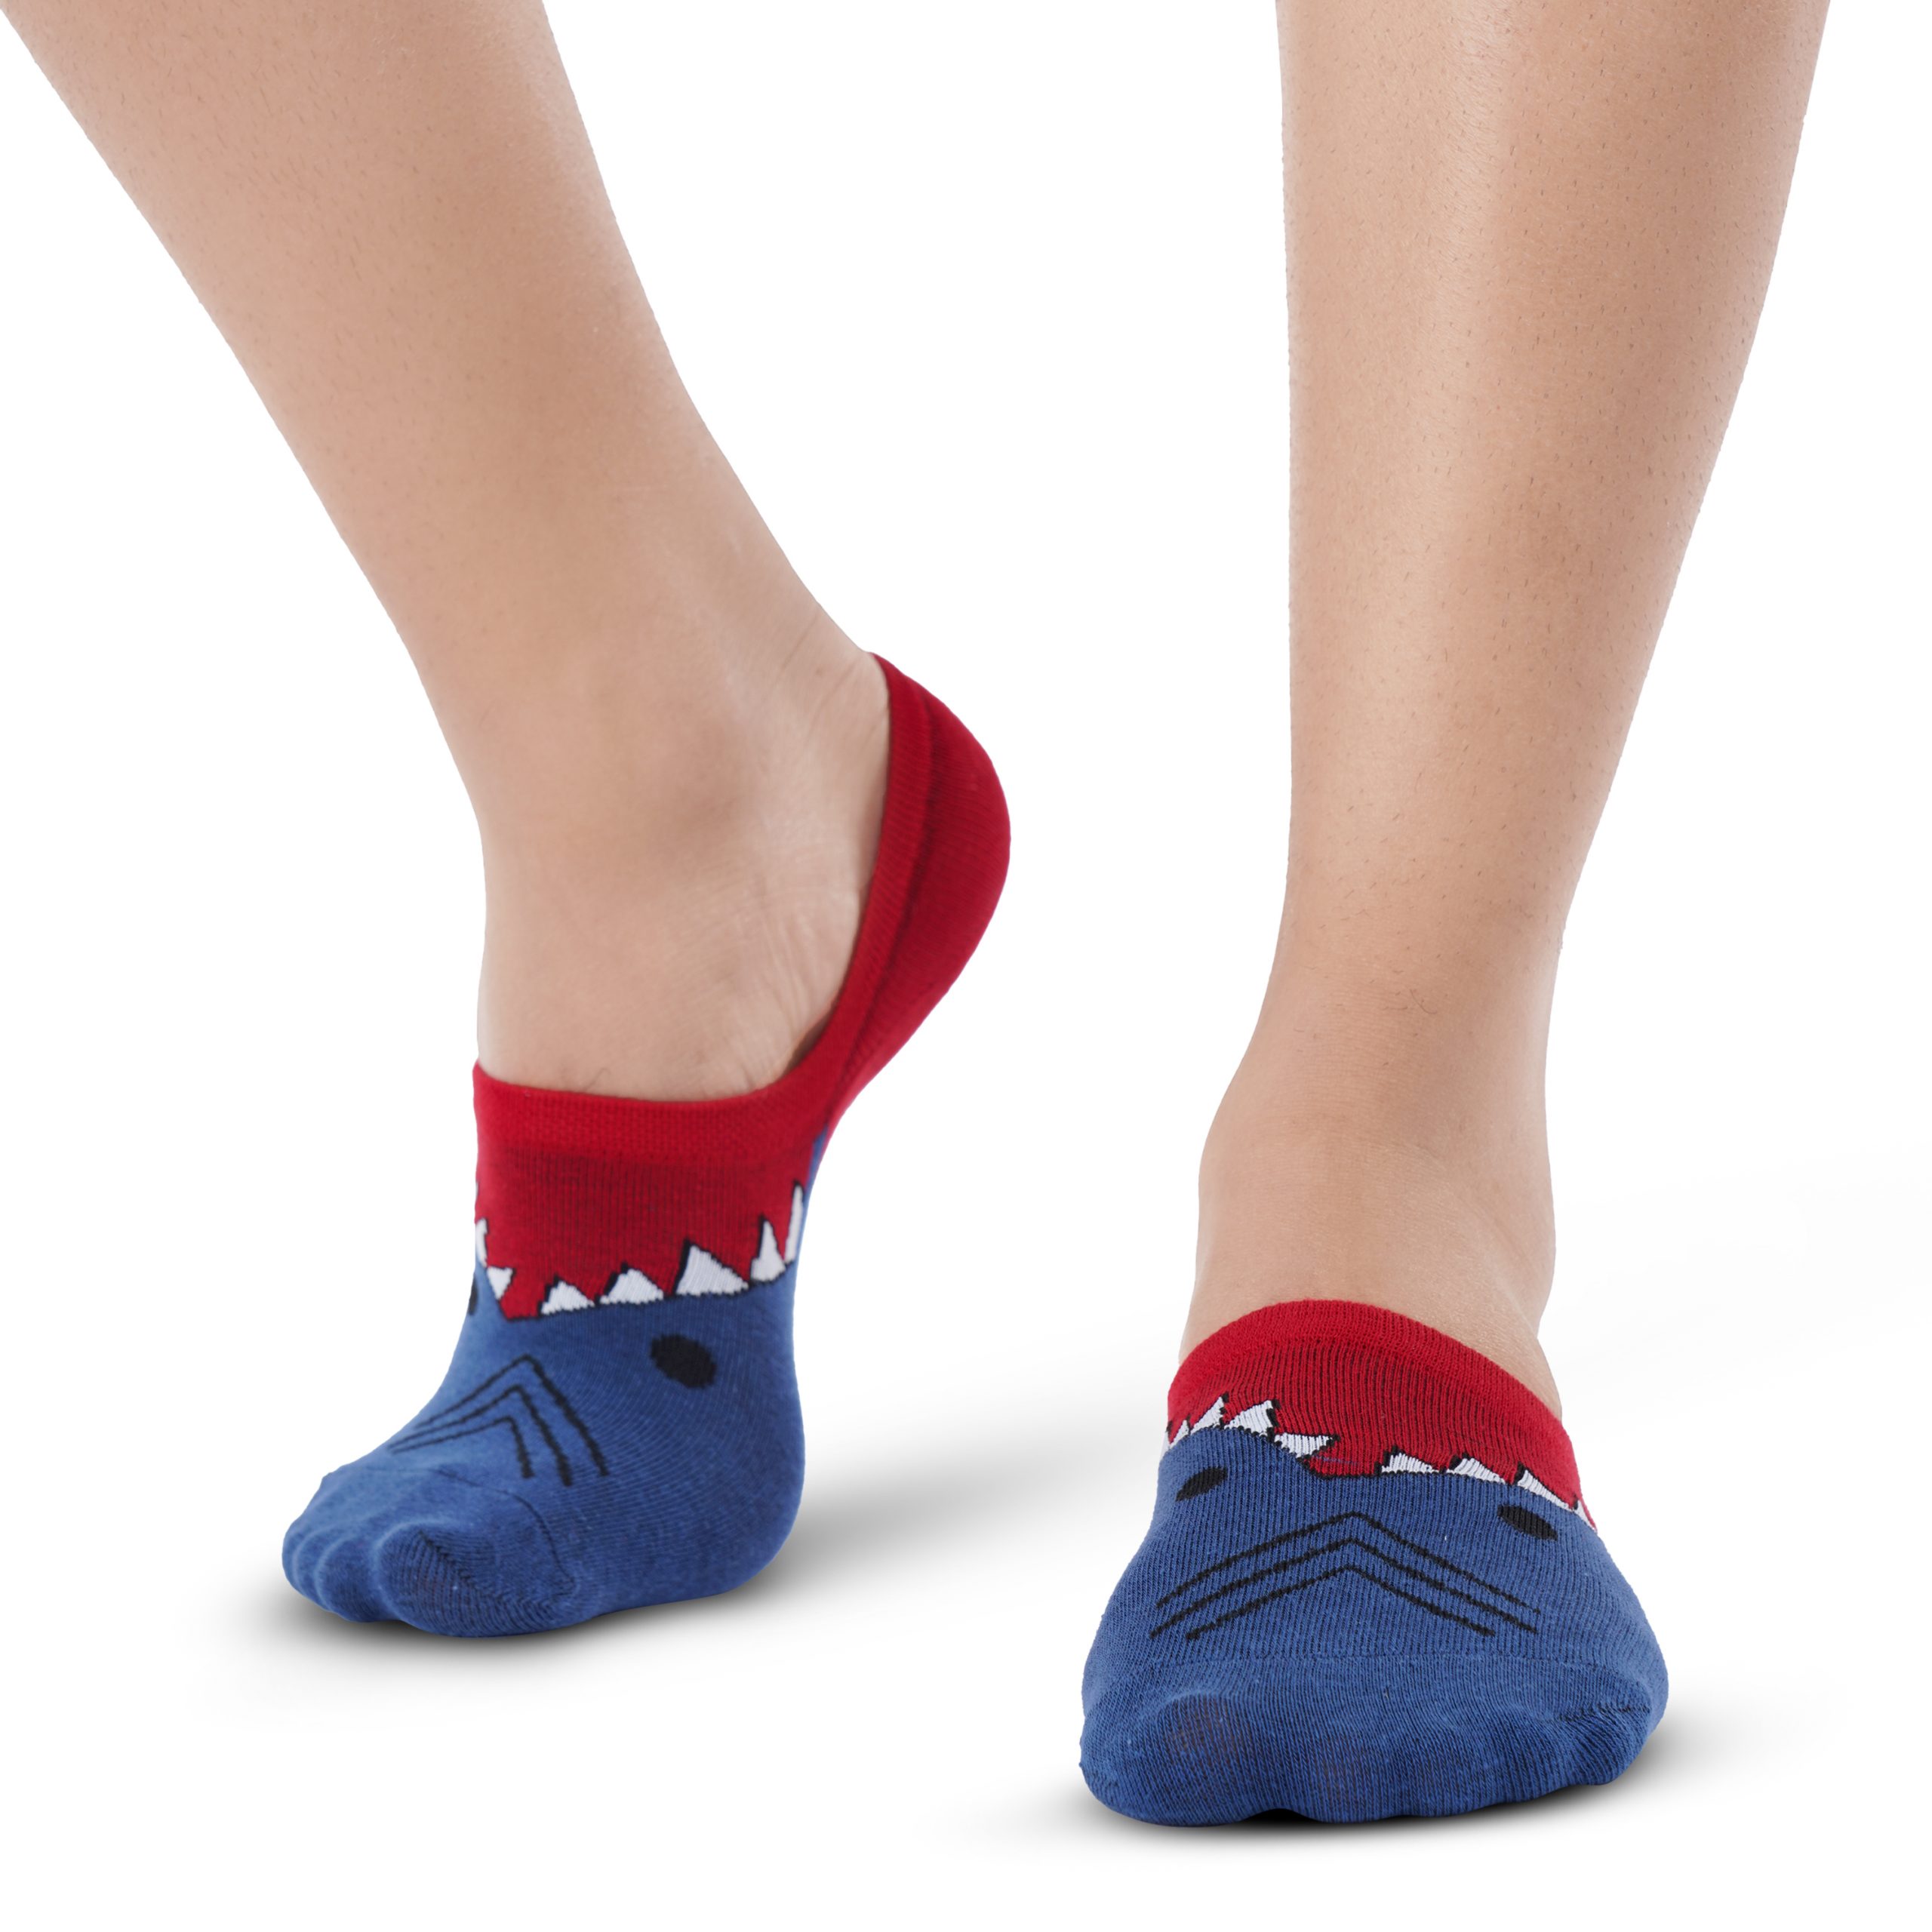 Albury: Blue & Red Shark Ankle Socks